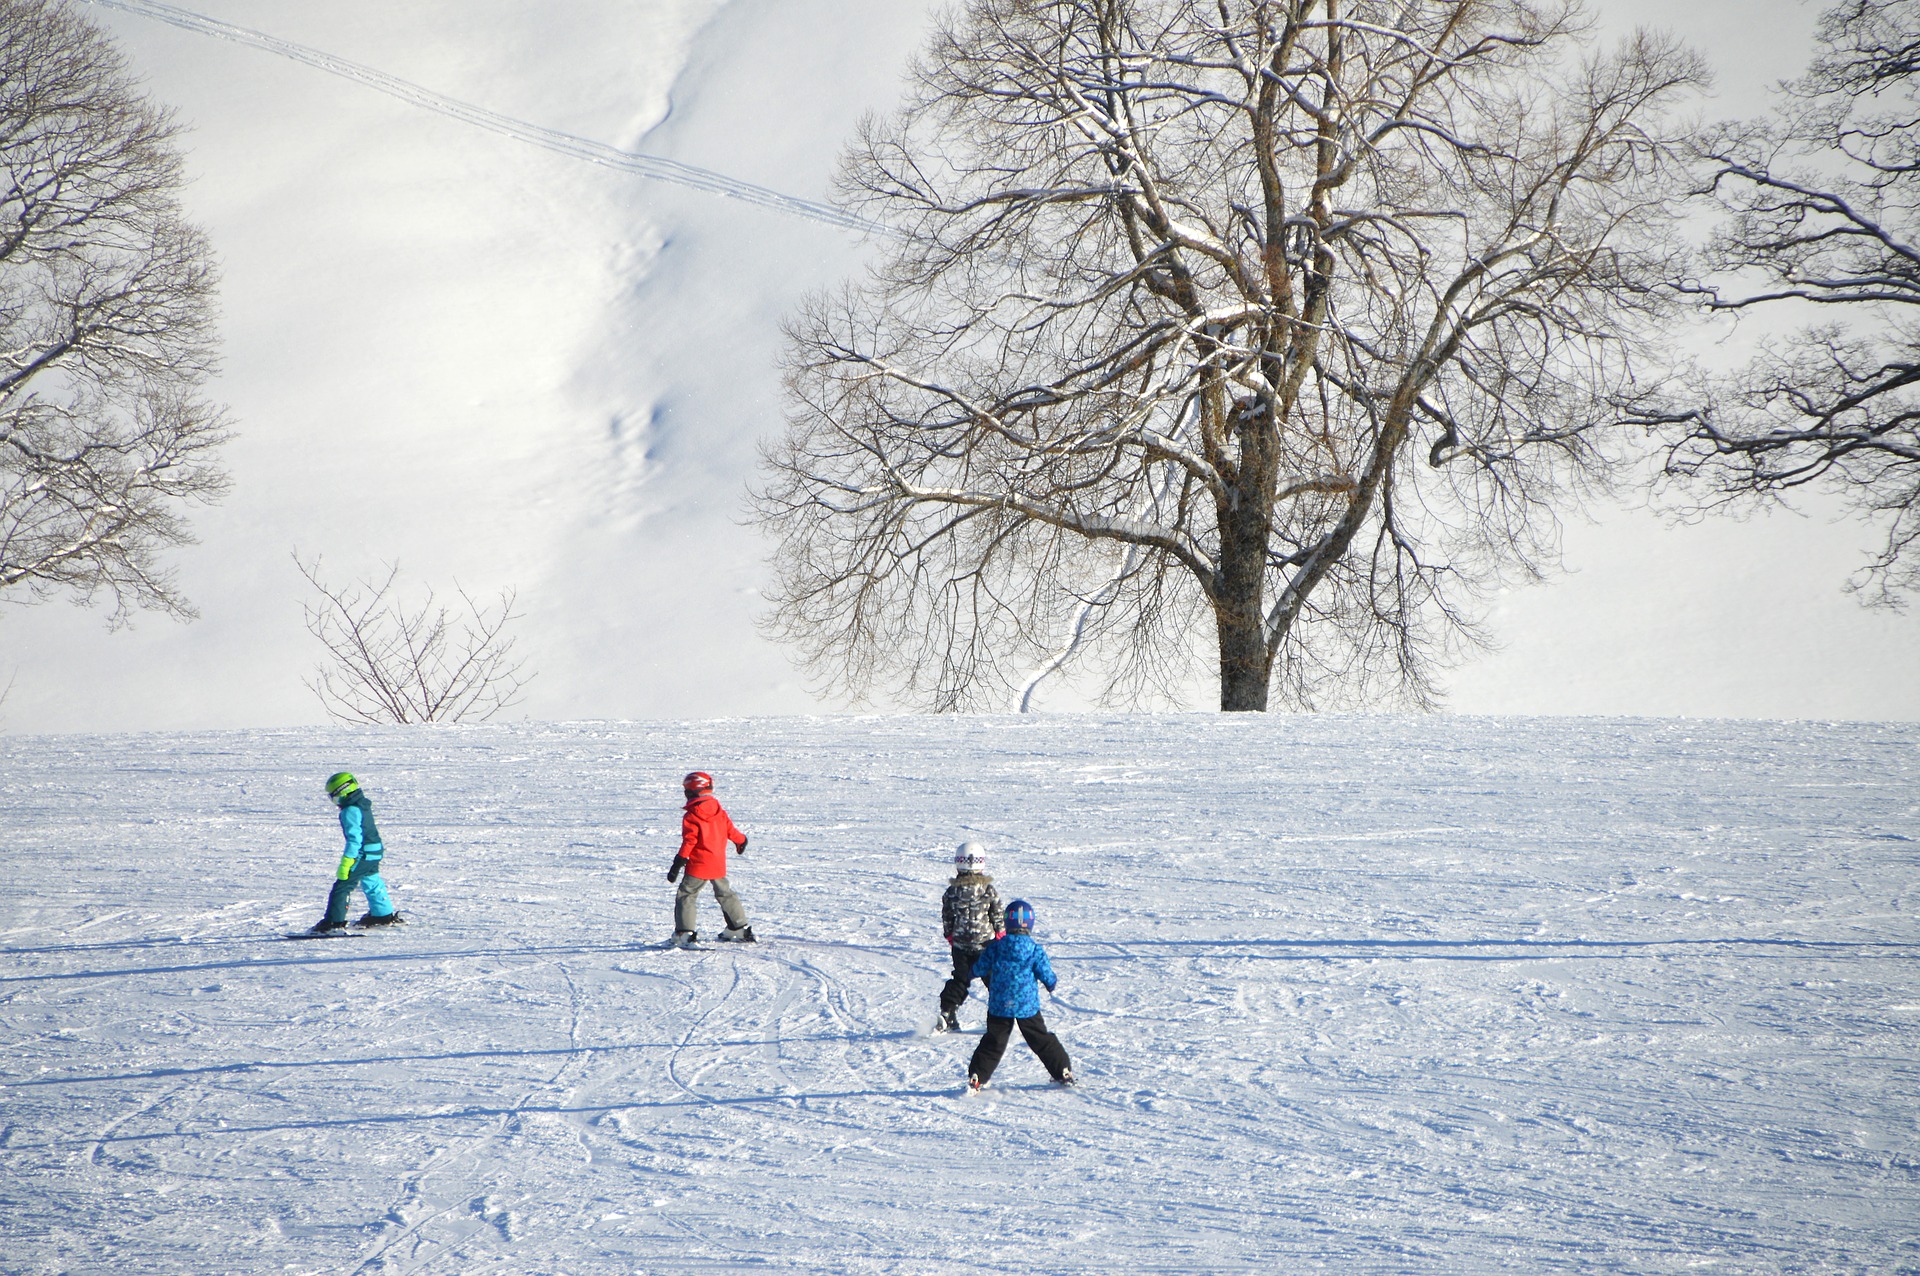 スキーをする子供